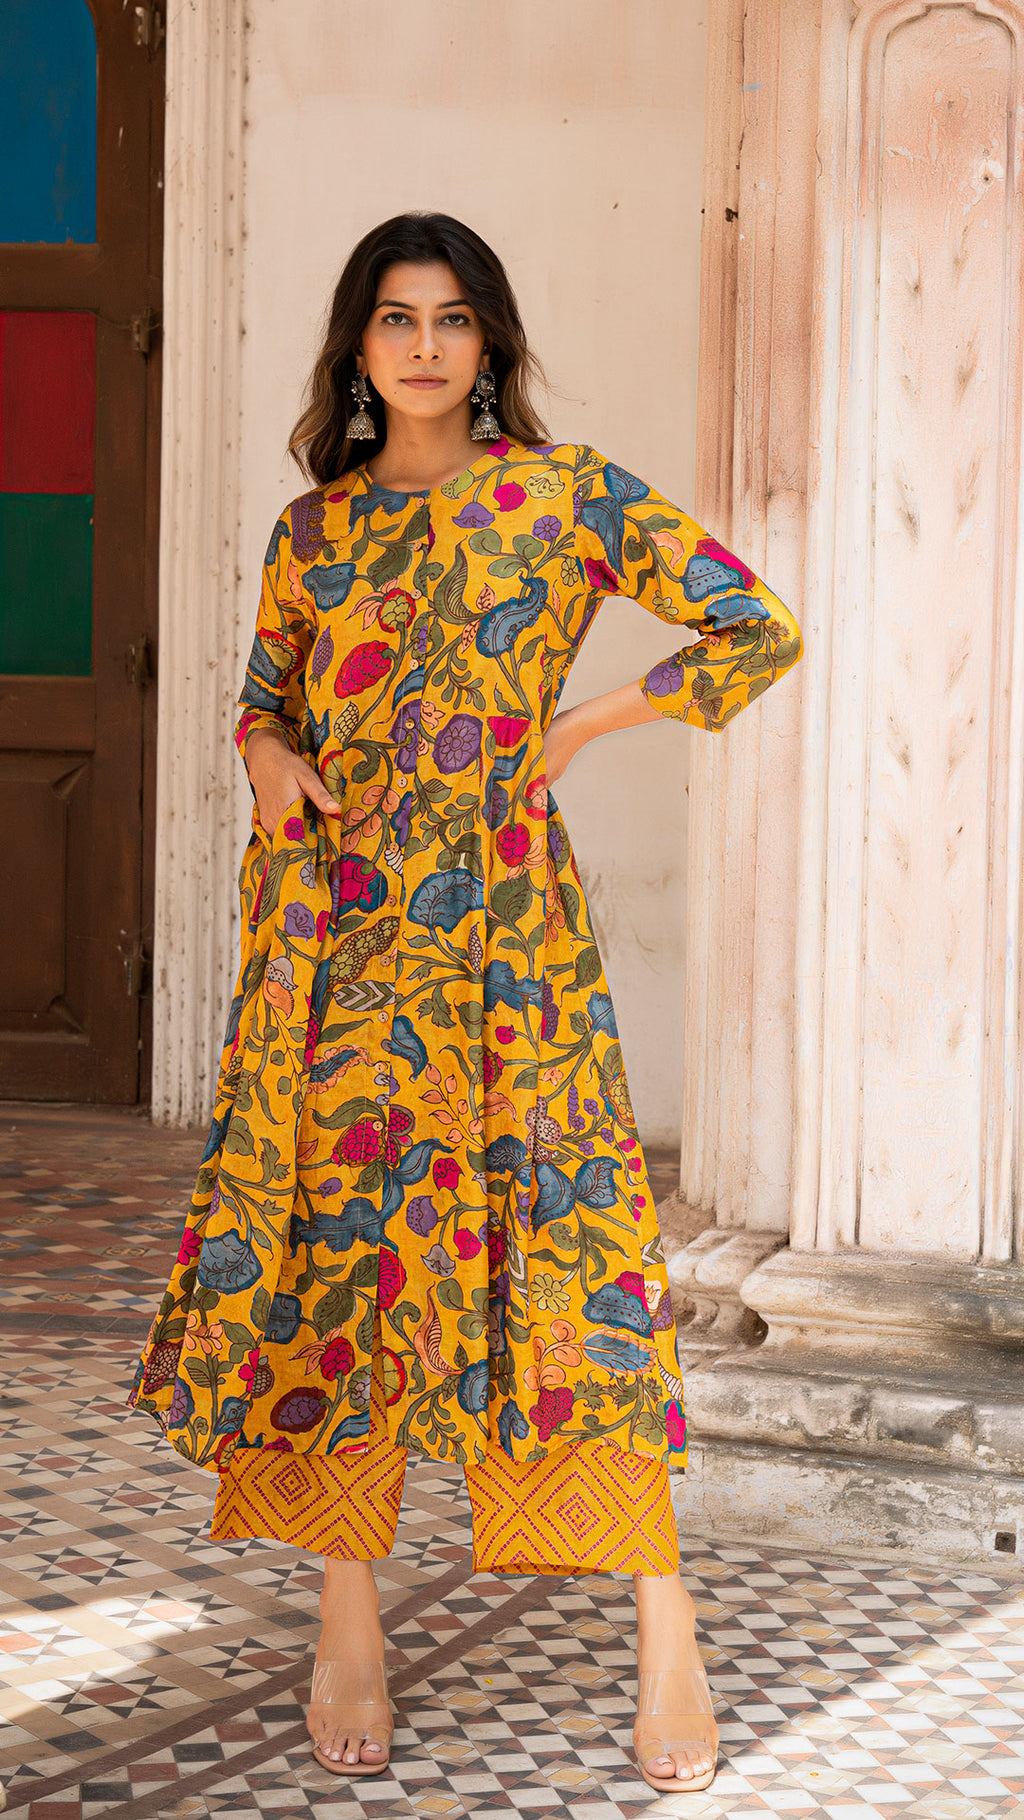 Buy ROYAL PITARAH Beige Kalamkari Printed Organic Cotton Long Dress with  Tassels - X-Large at Amazon.in